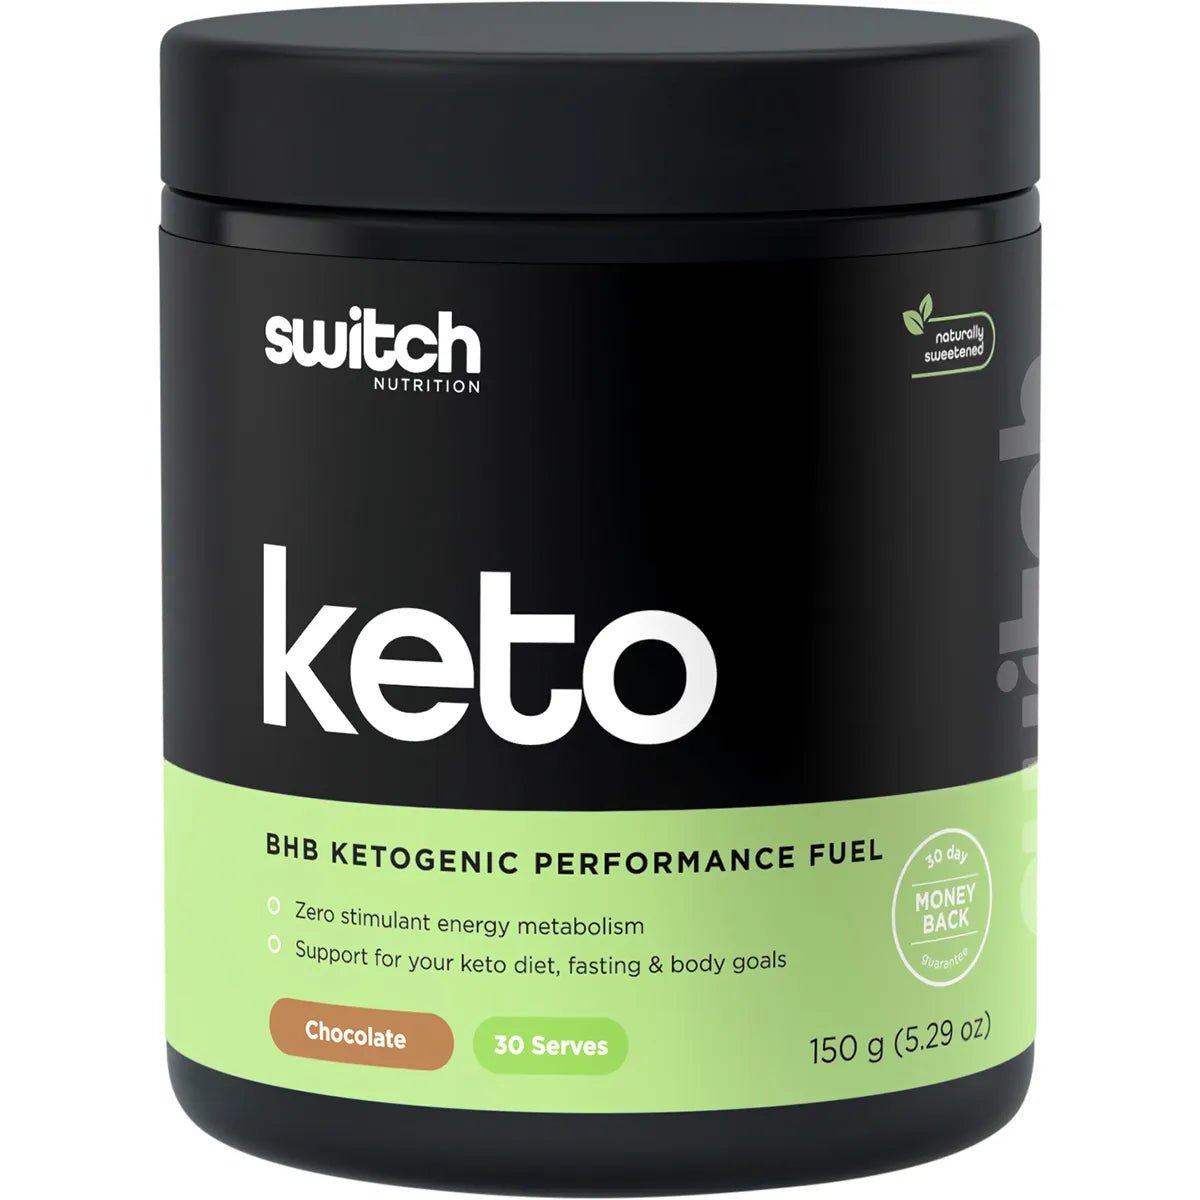 Keto - BHB Ketogenic Performance Fuel - Chocolate - 150g - Yo Keto